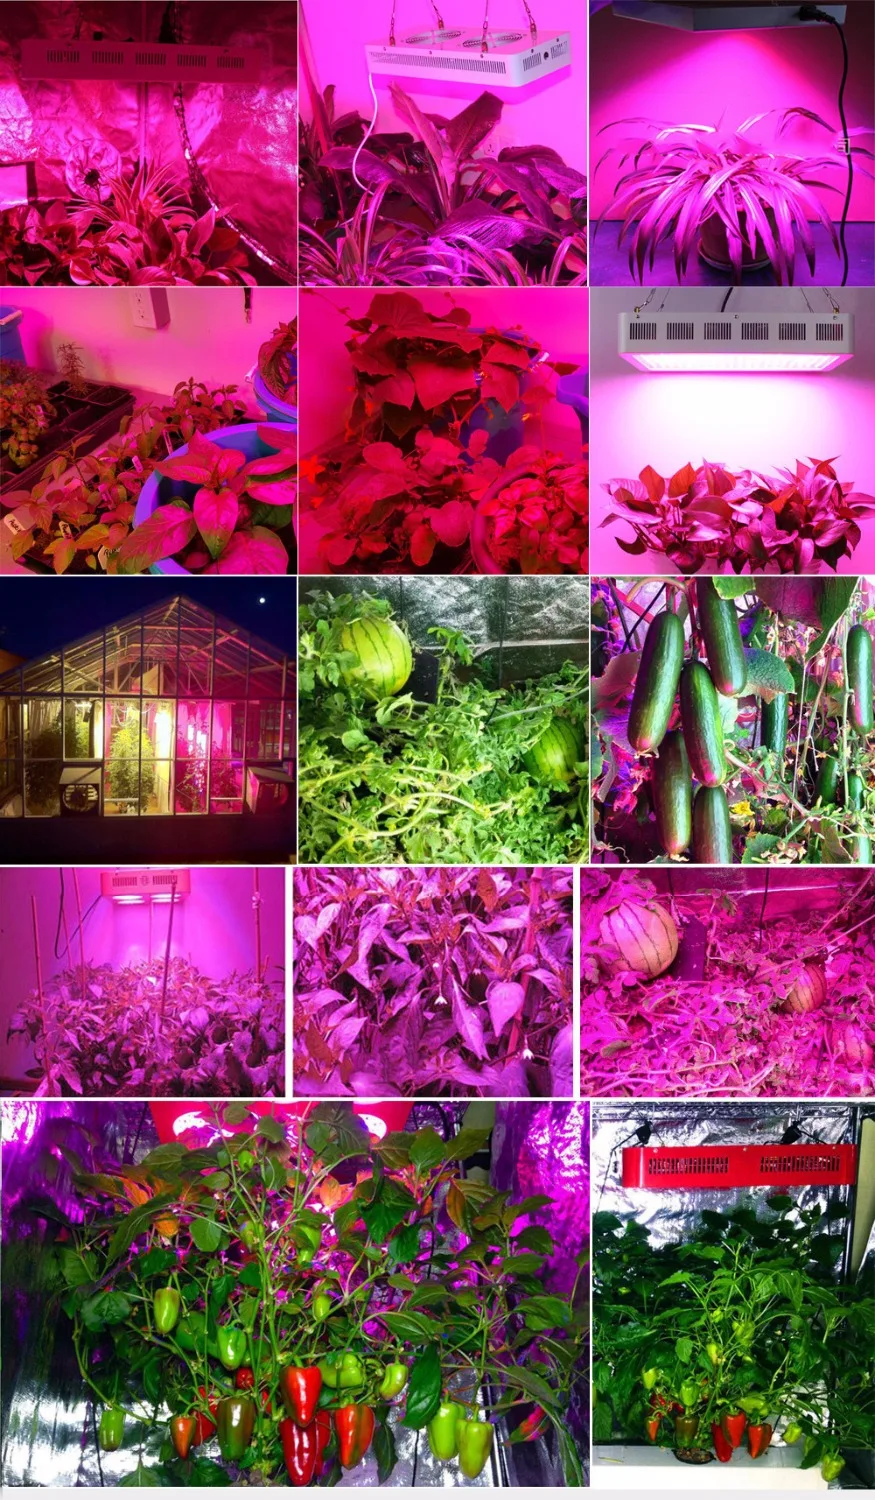 FAMURS led vækst lys 1500W fulde spektrum Triple-Chip UV-IR for at vokse telt drivhus, indendørs planter frø blomstre veg